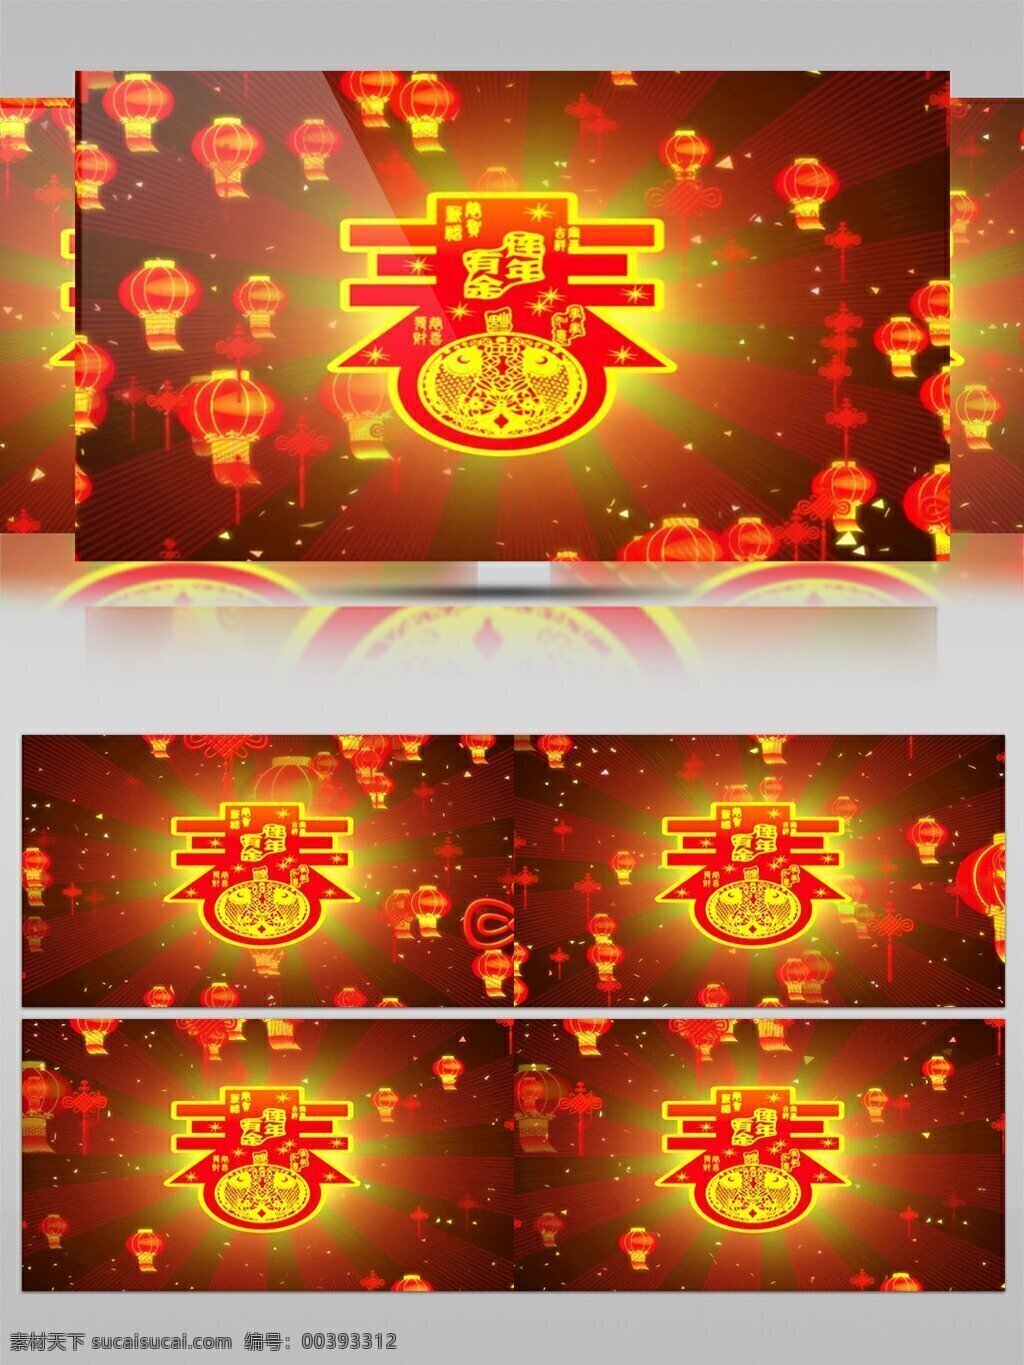 高清 春节 节日 庆祝 视频 动态视频素材 高清视频素材 视频素材